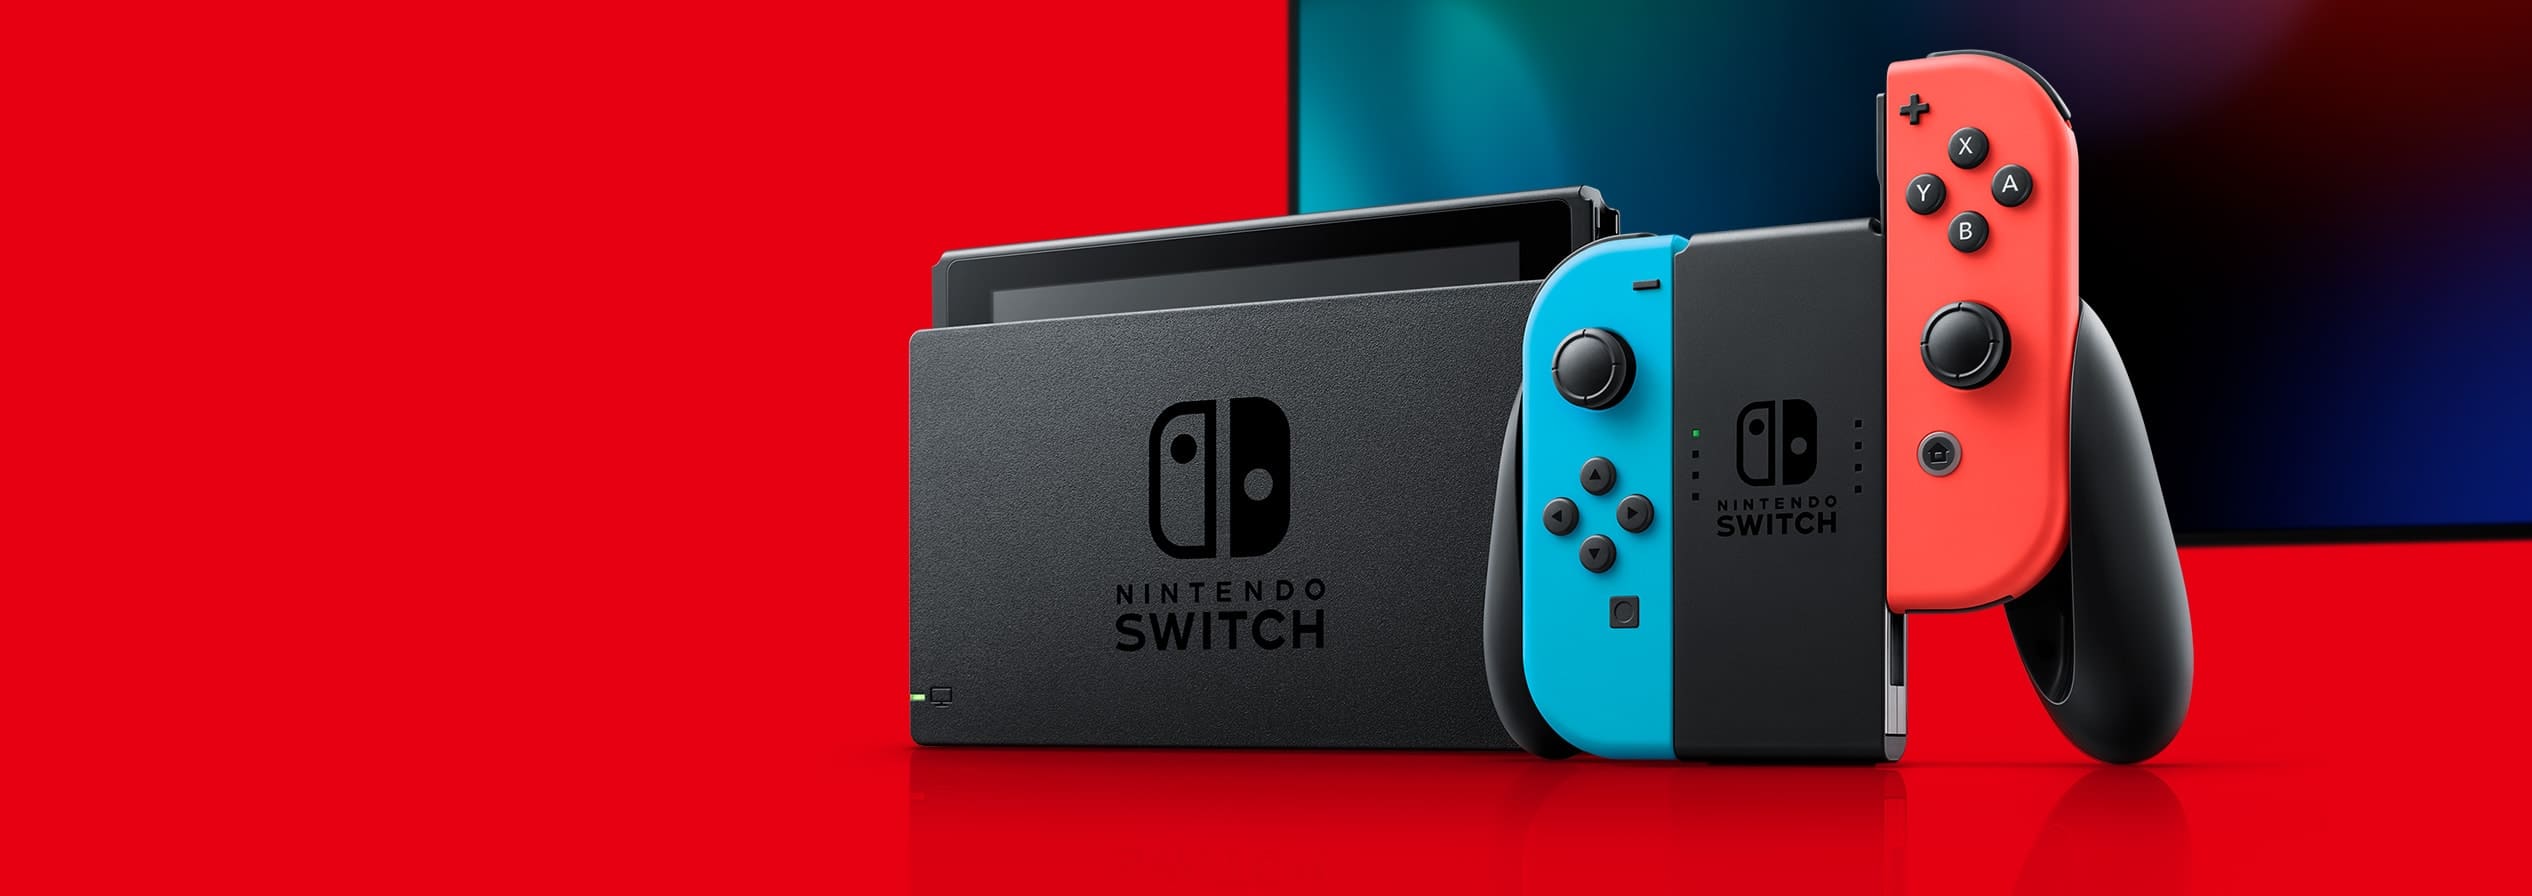 منصة Nintendo Switch هي الأكثر مبيعاً في العالم خلال الأسبوع الماضي